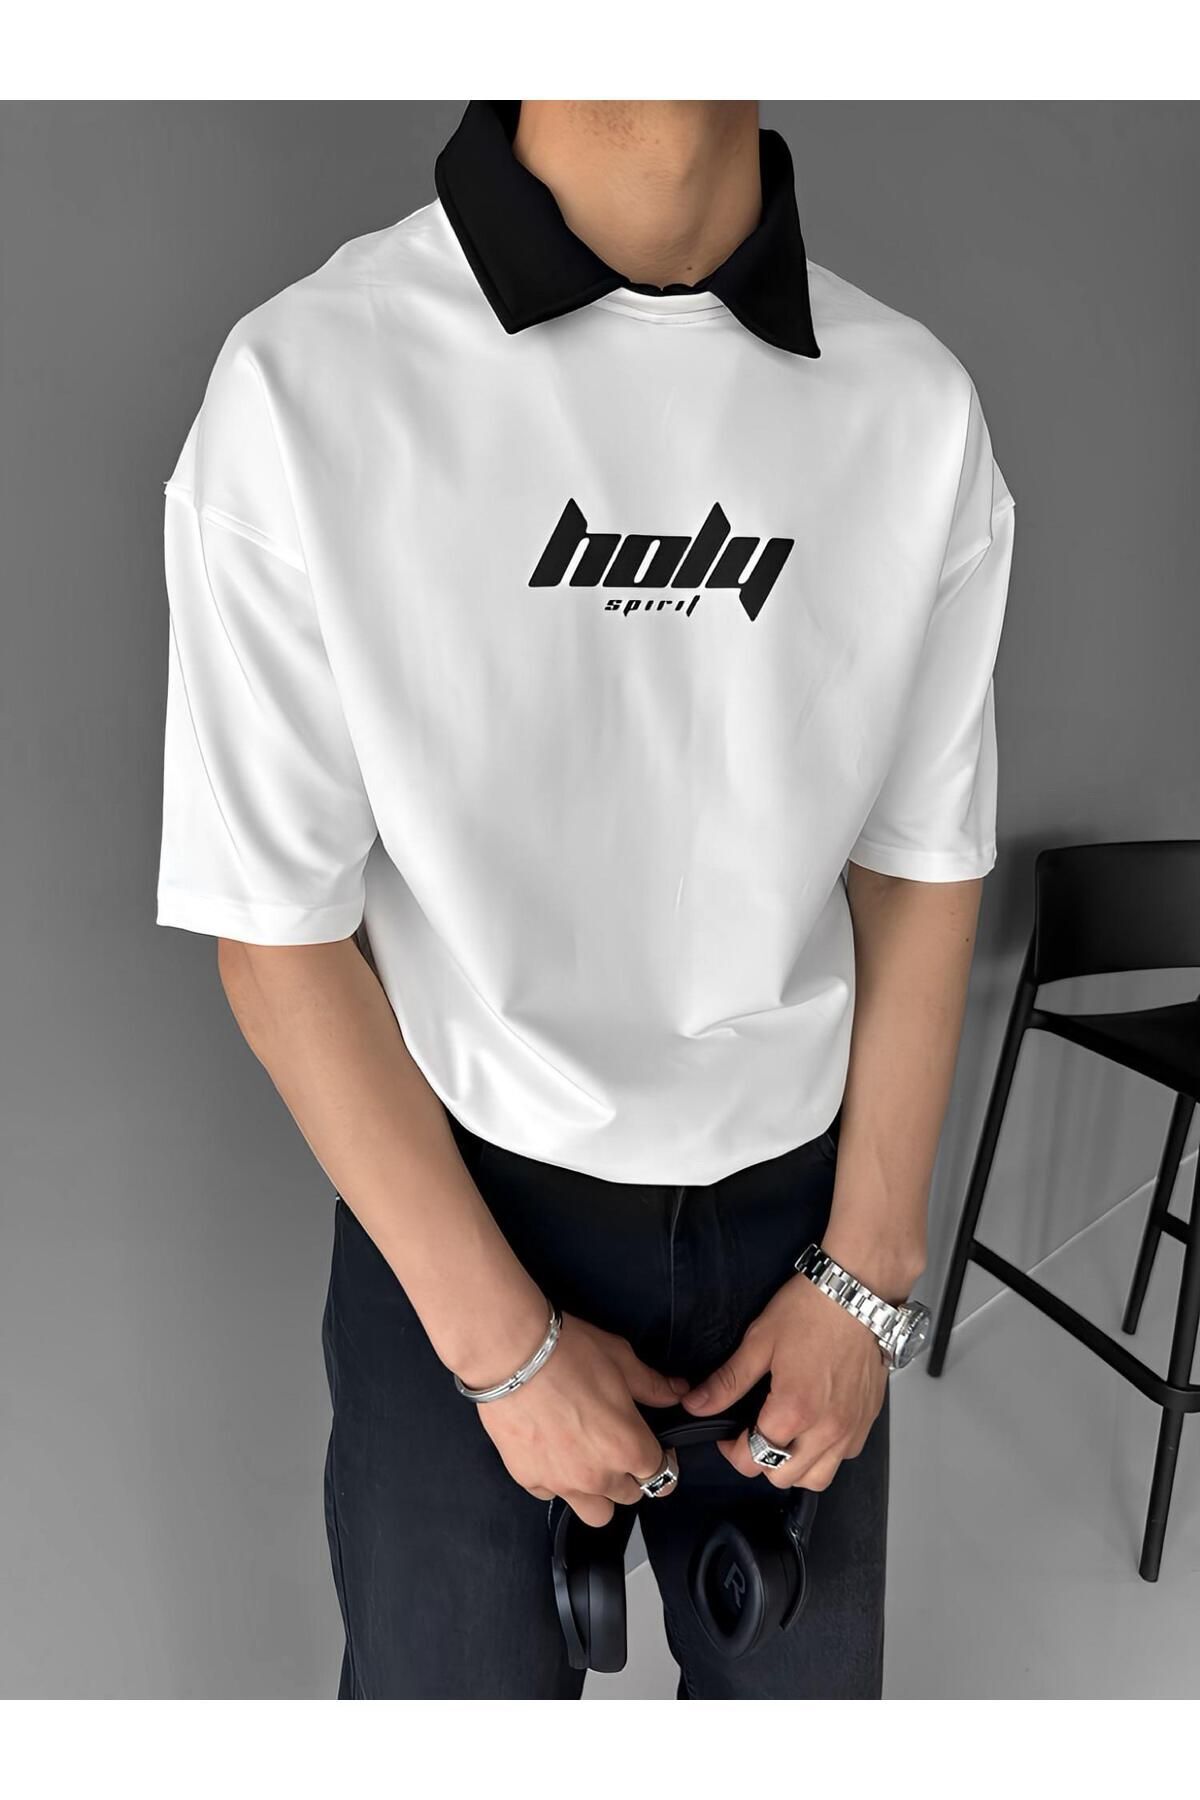 ablikaonline Oversize-поло, текстурированная гибкая удобная футболка с принтом, белая TST.0167